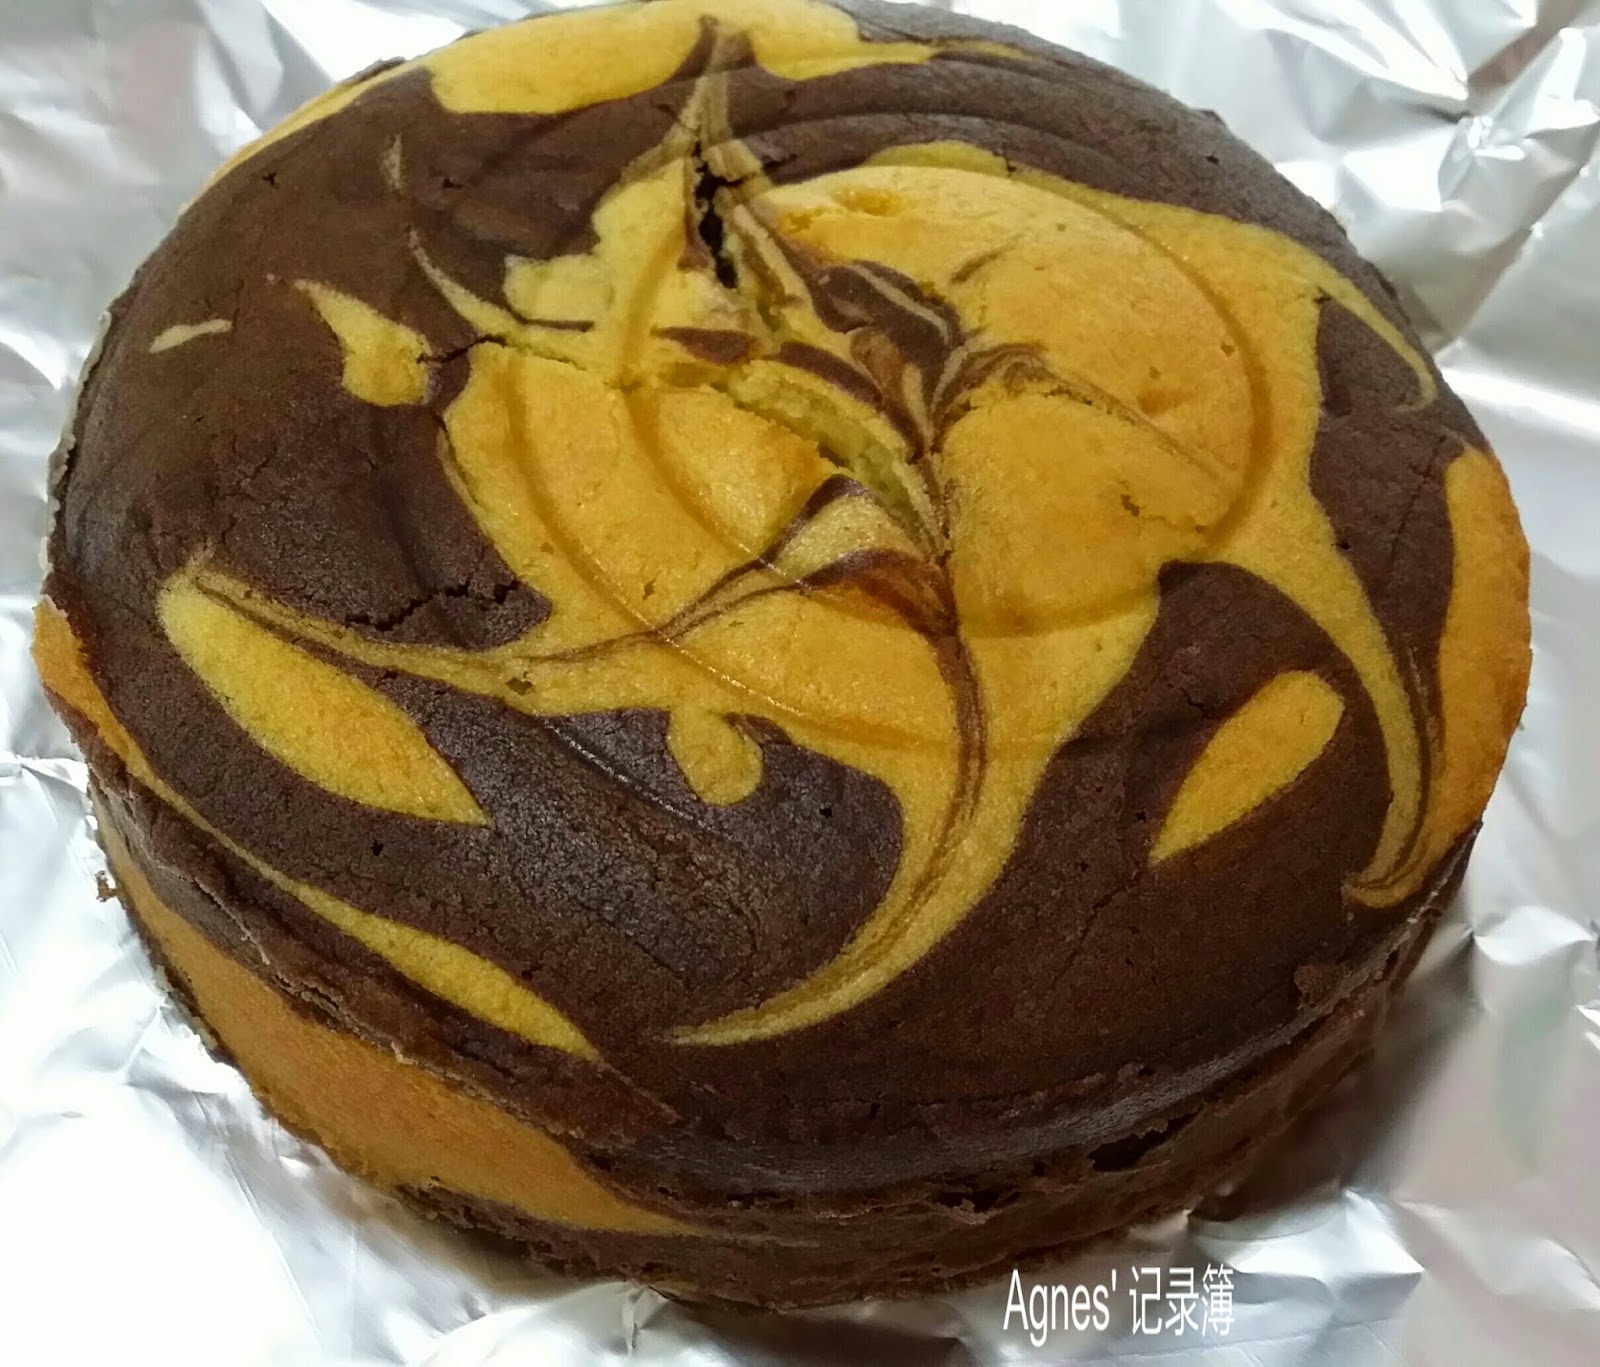 袅袅烘焙香: 斑马纹蛋糕卷